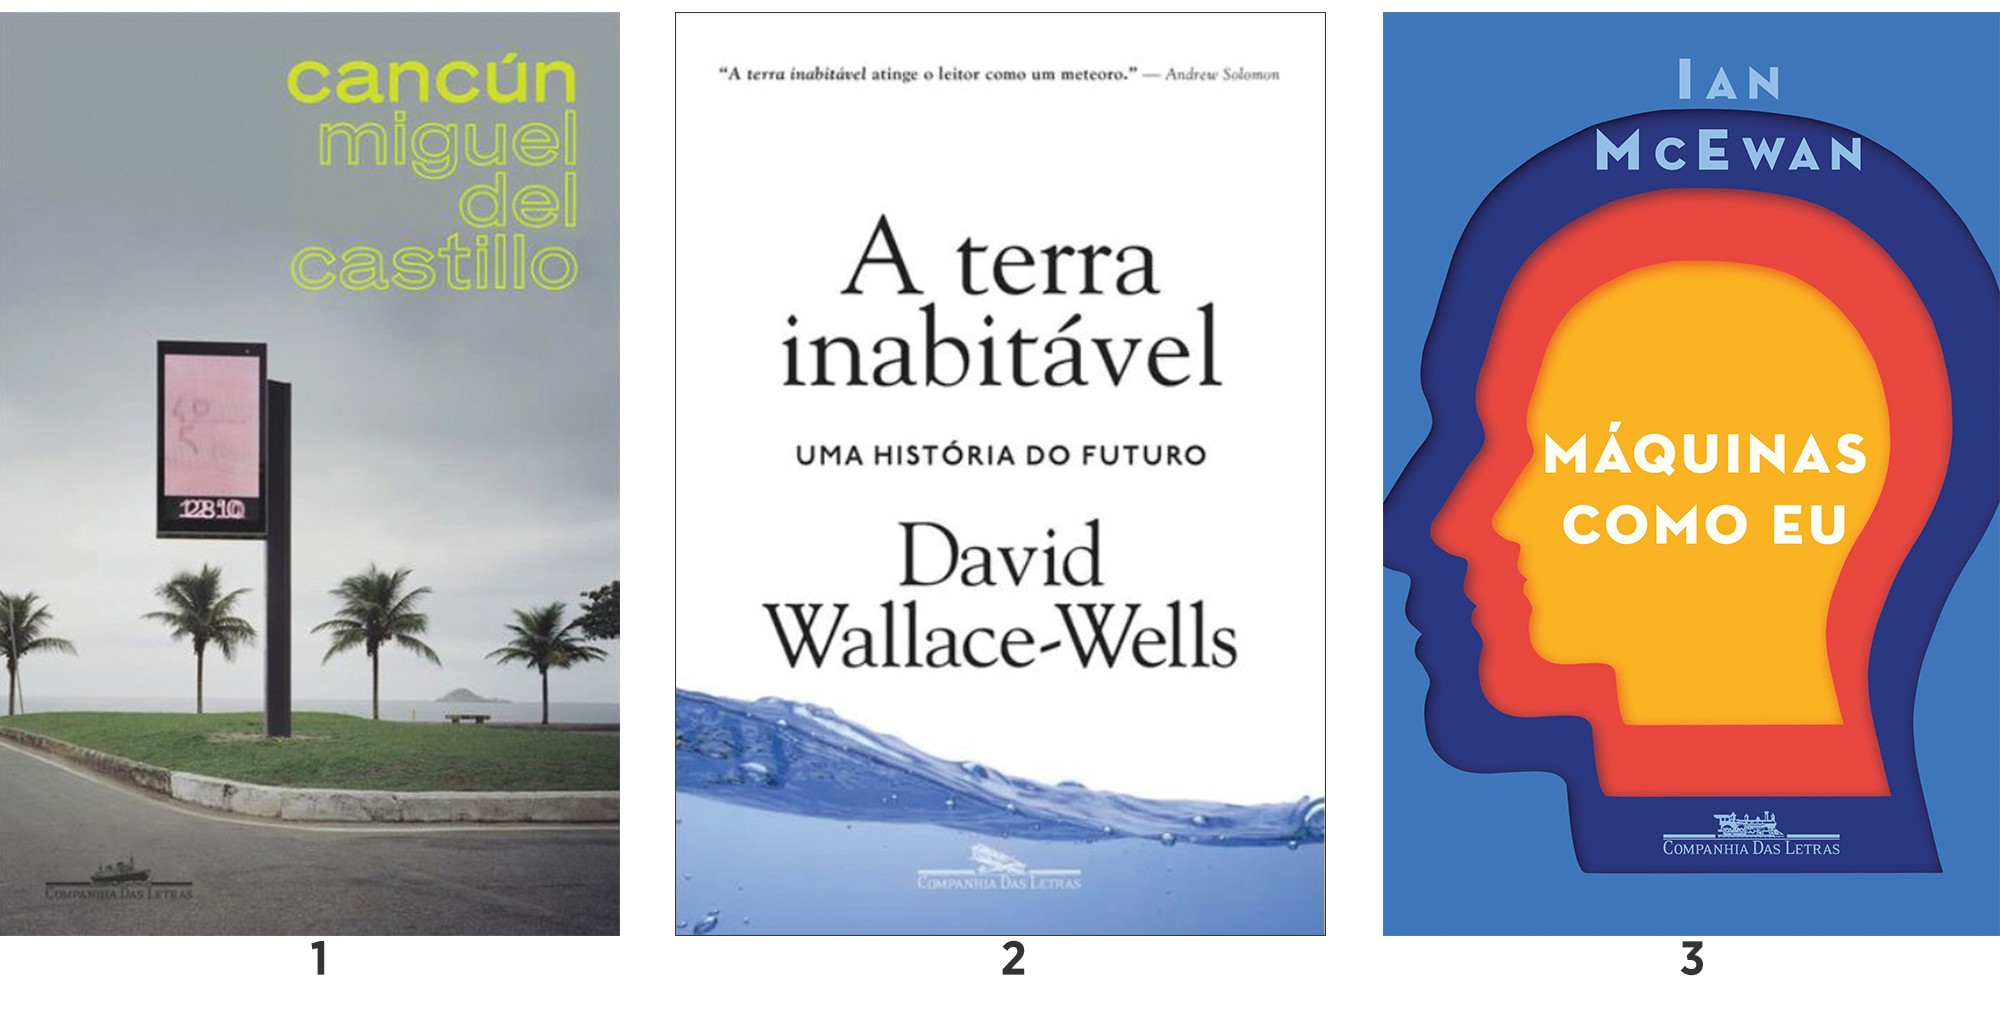 Cancún, Miguel del Castillo | A terra inabitável, David Wallace-Wells | Máquinas como eu, Ian McEwan (Foto: divulgação)